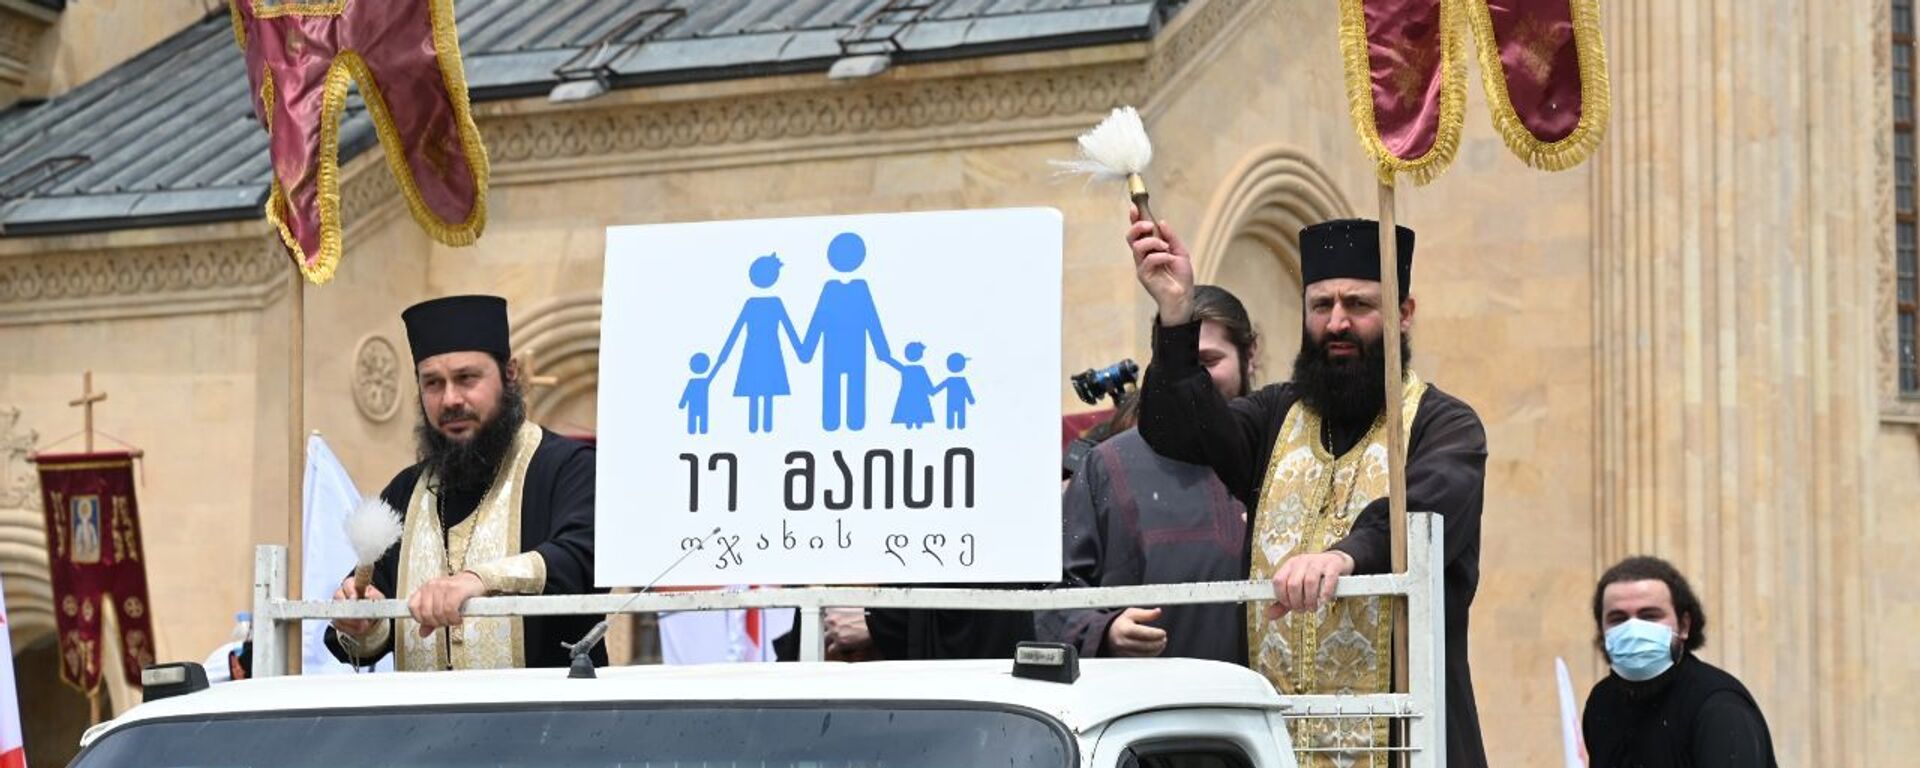 День святости семьи и традиционных ценностей отмечает Патриархия Грузии 17 мая 2021 года - Sputnik Грузия, 1920, 17.05.2021